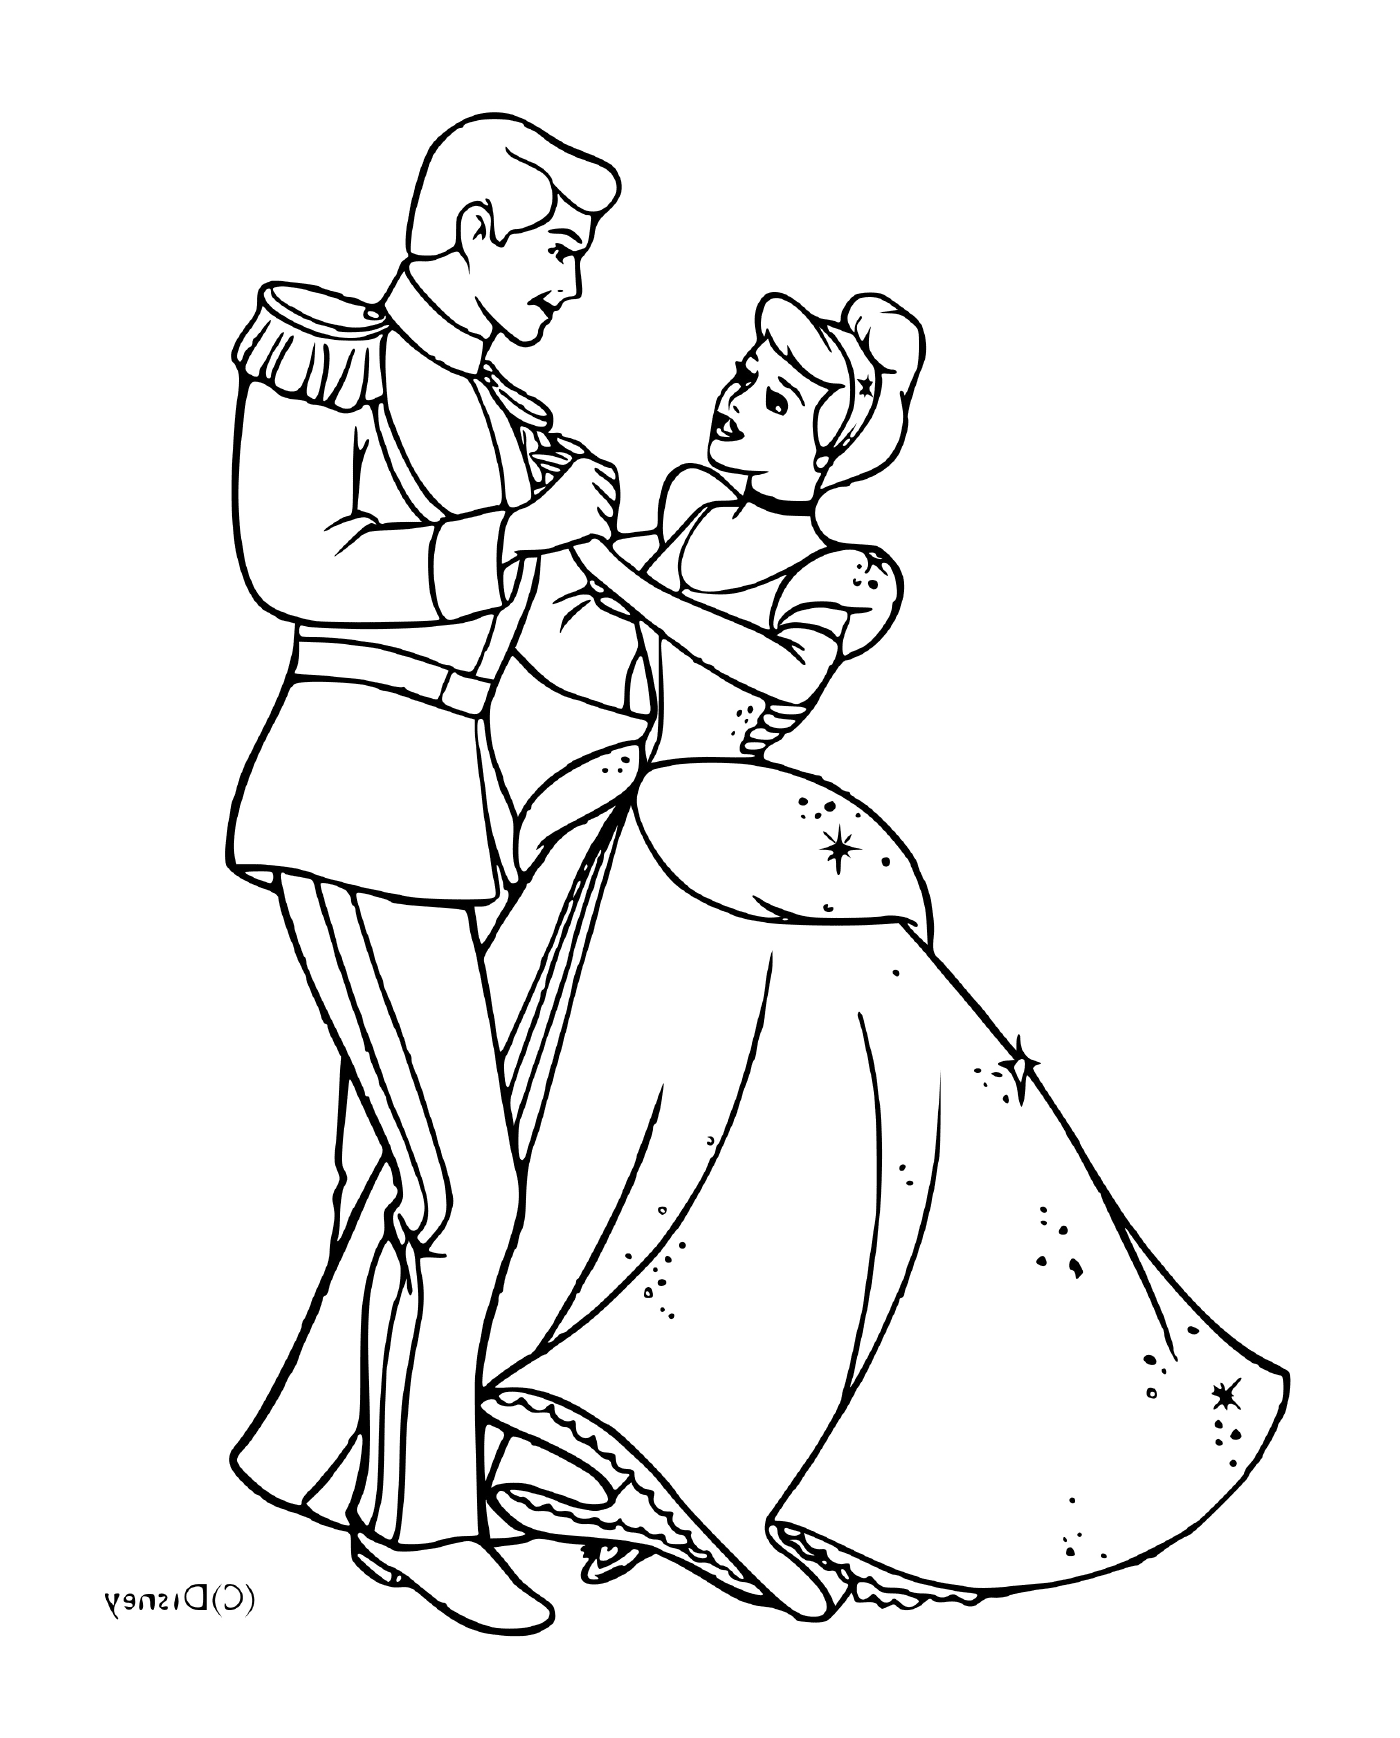   Cendrillon et son prince charmant dansant ensemble 